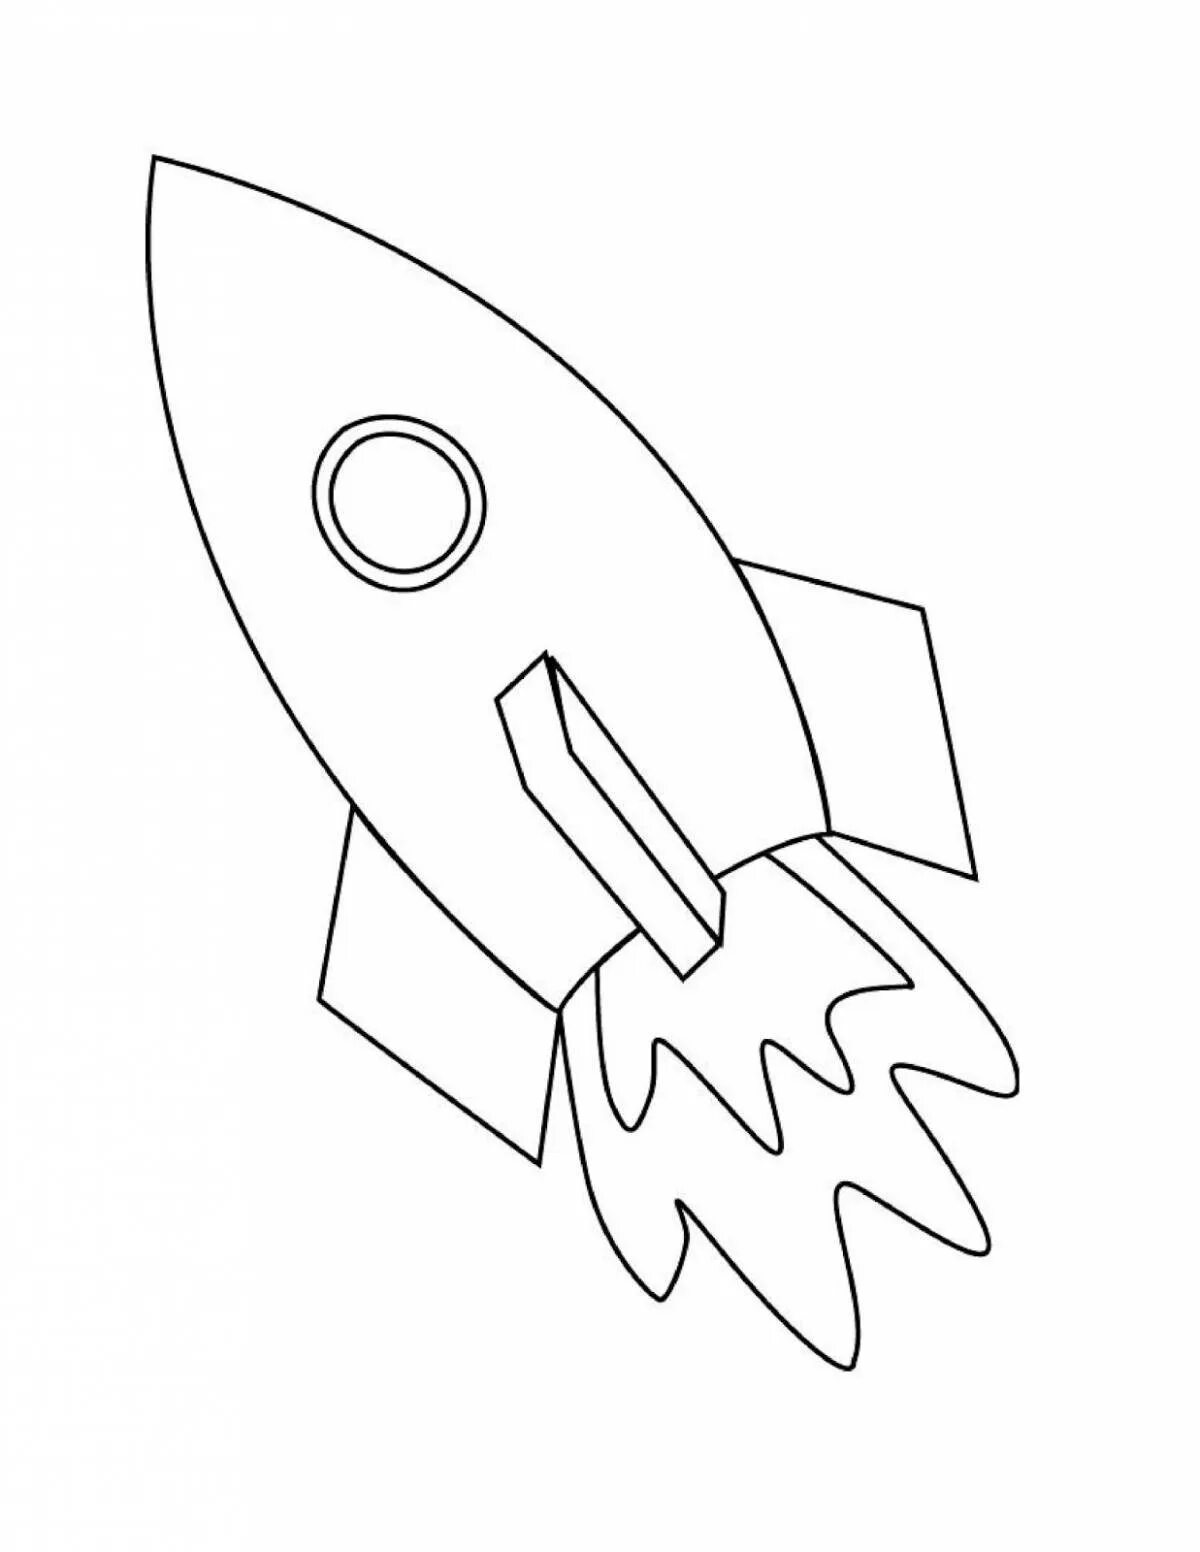 Шаблон ракеты для аппликации ко дню космонавтики. Ракета раскраска. Ракета раскраска для детей. Космическая ракета раскраска. Ракета рисунок контур.